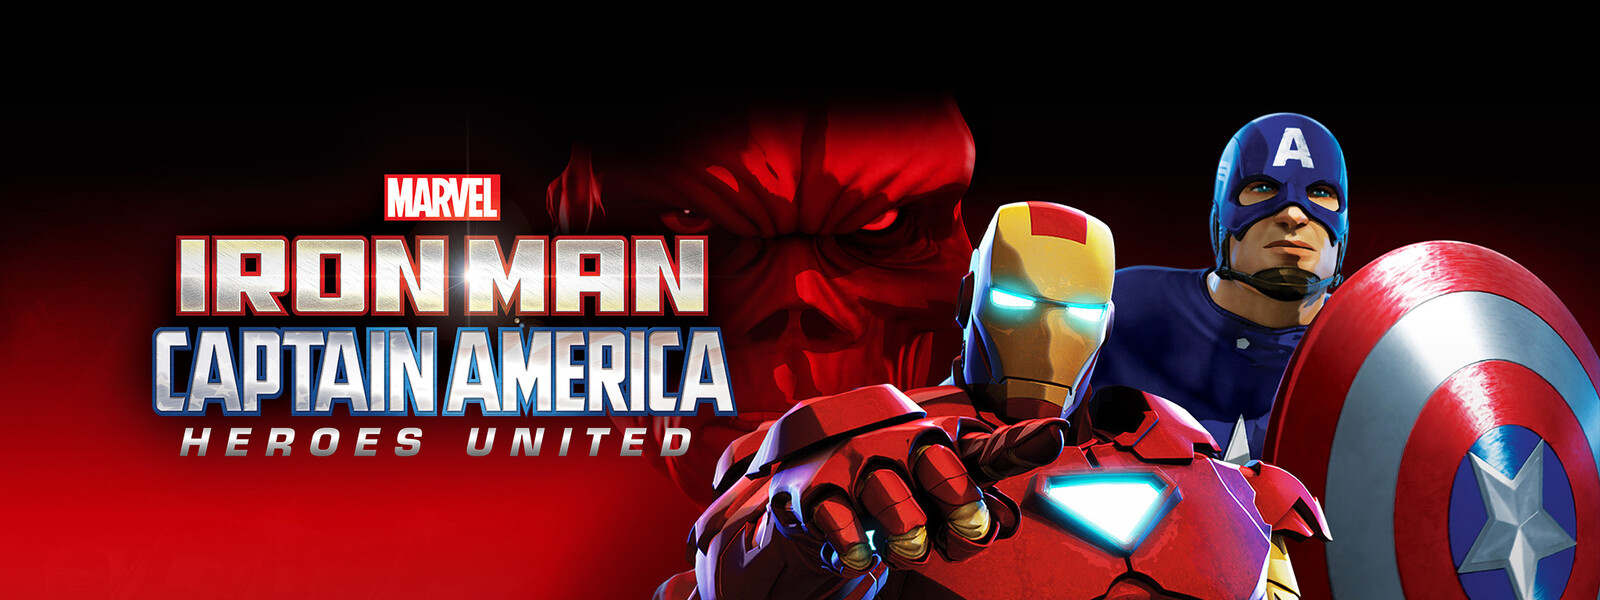 アイアンマン & キャプテン・アメリカ:真のヒーローたち 動画